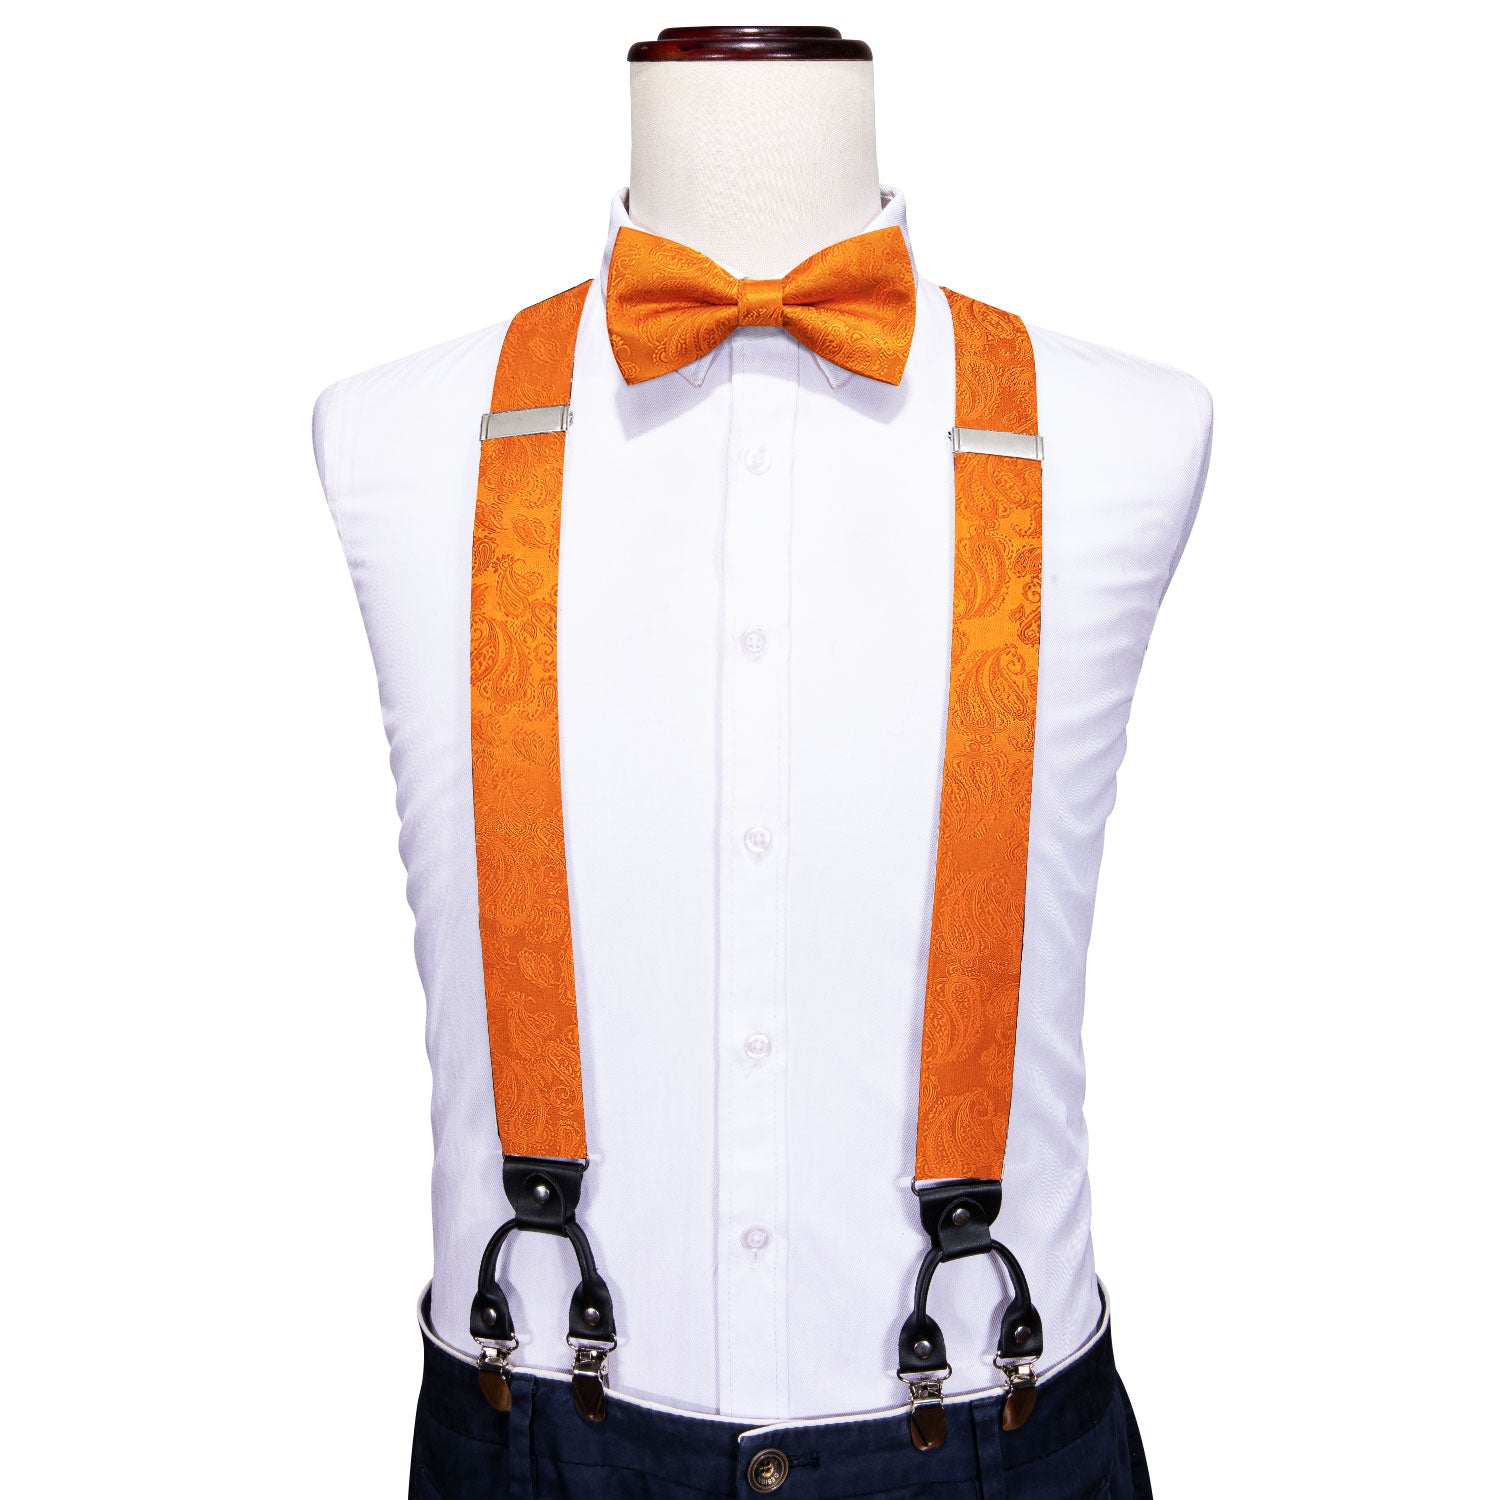 Orange Paisley Y Back Adjustable Bow Tie Suspenders Set